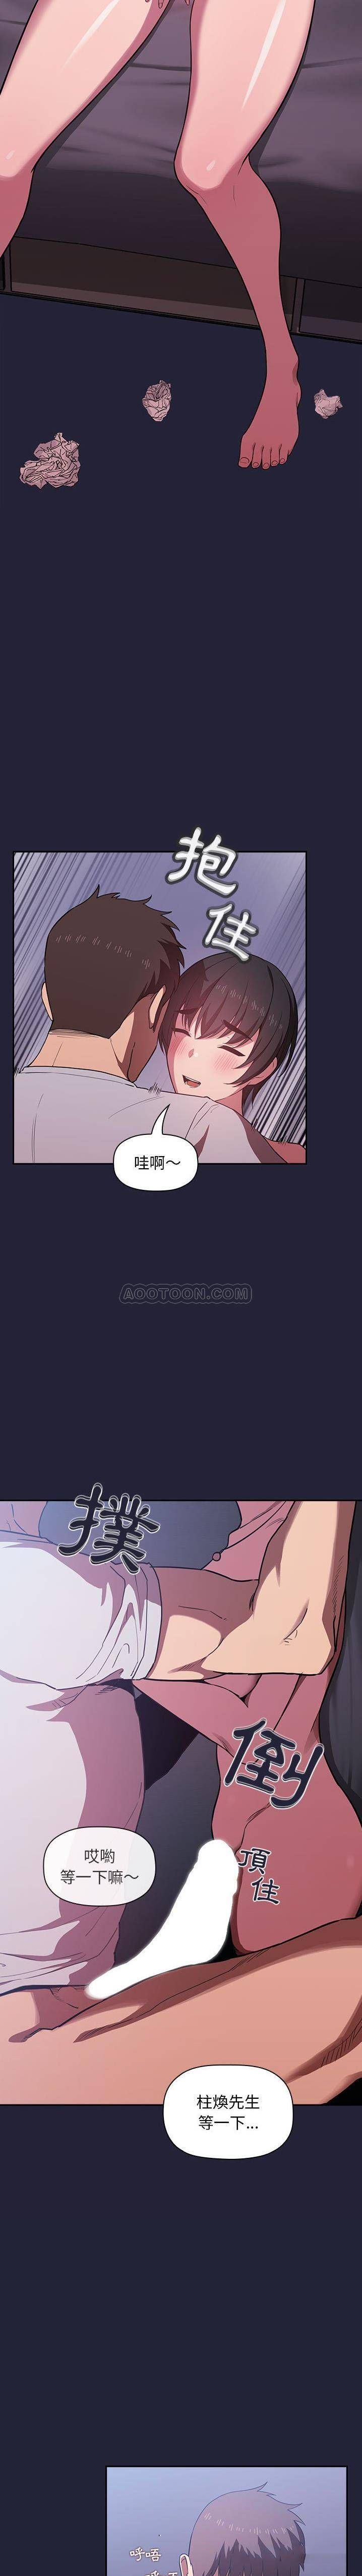 韩国污漫画 BJ的夢幻直播 第15话 15